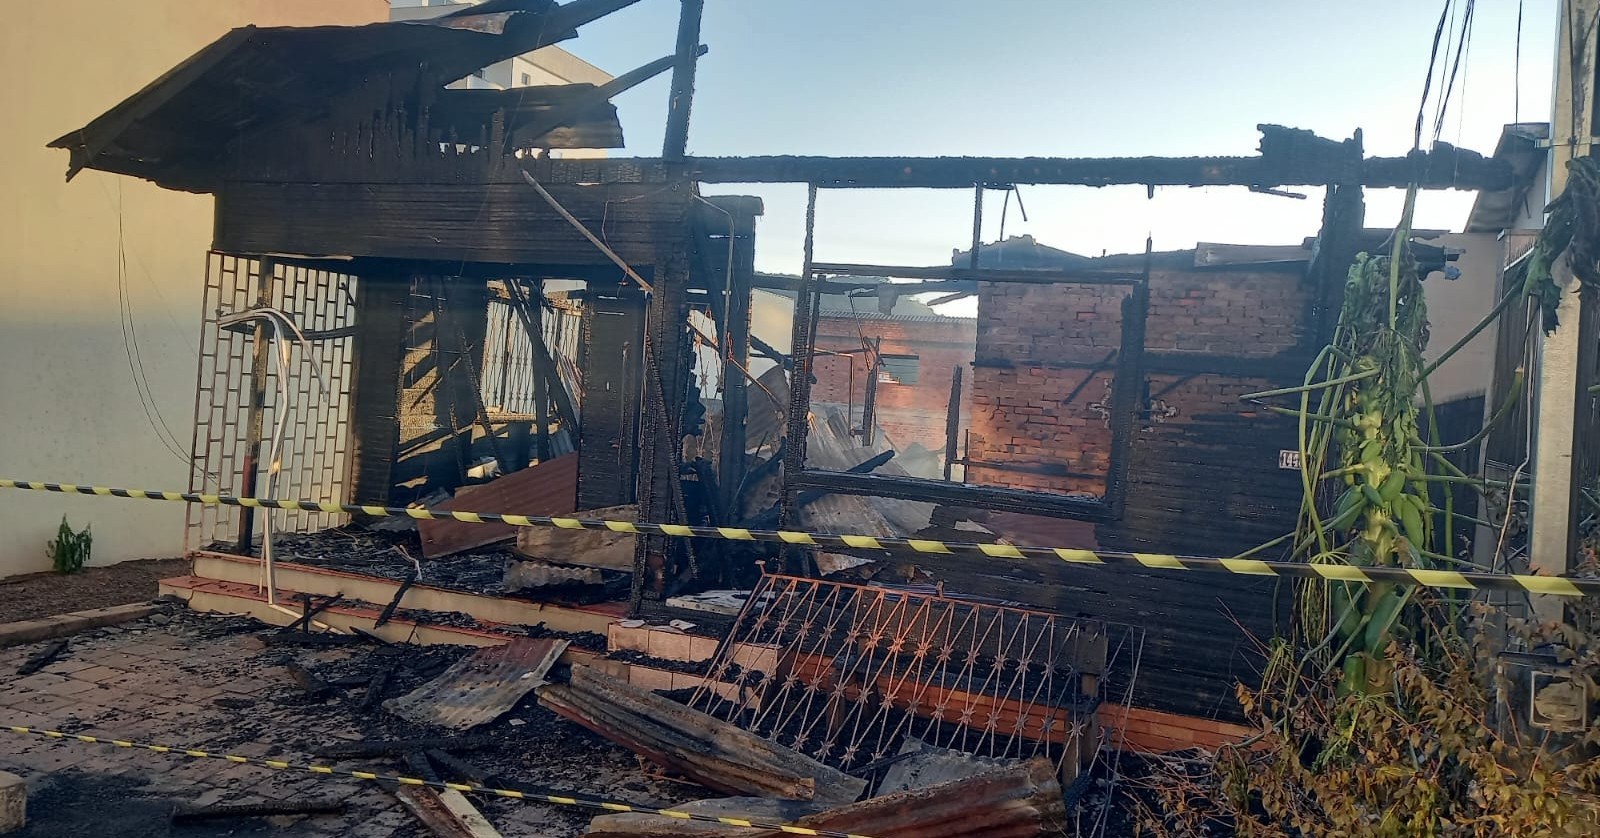 Incêndio atinge estabelecimento durante a madrugada em Marau. O estabelecimento ficou destruído após incêndio de grandes proporções